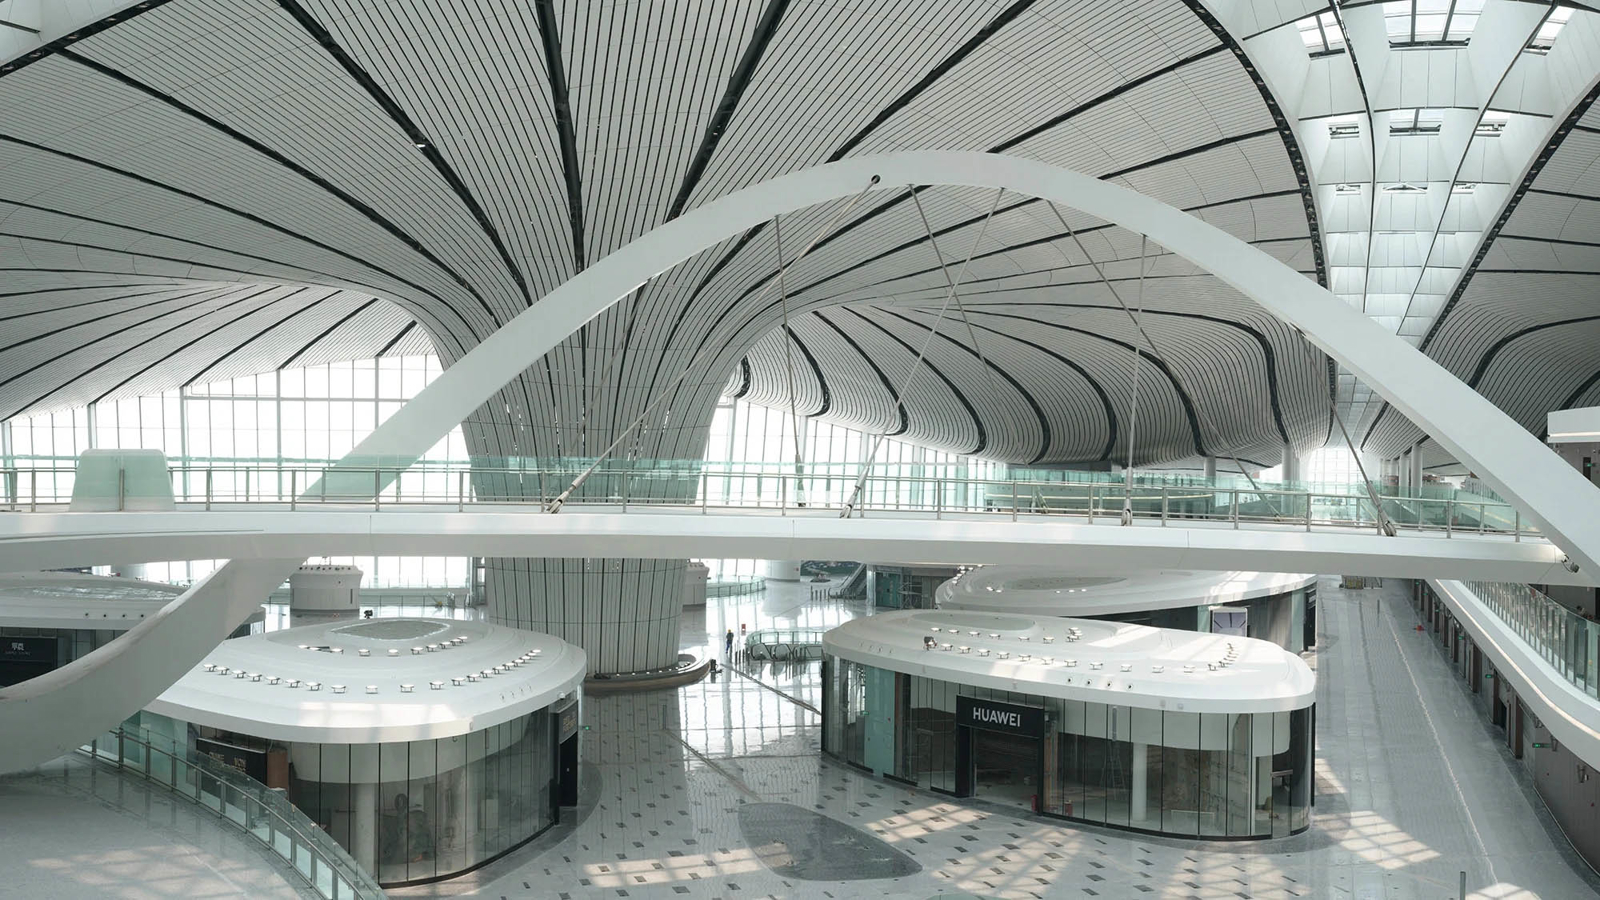 Beijing Daxing International Airport. Credit: Zhou Rougu Photography